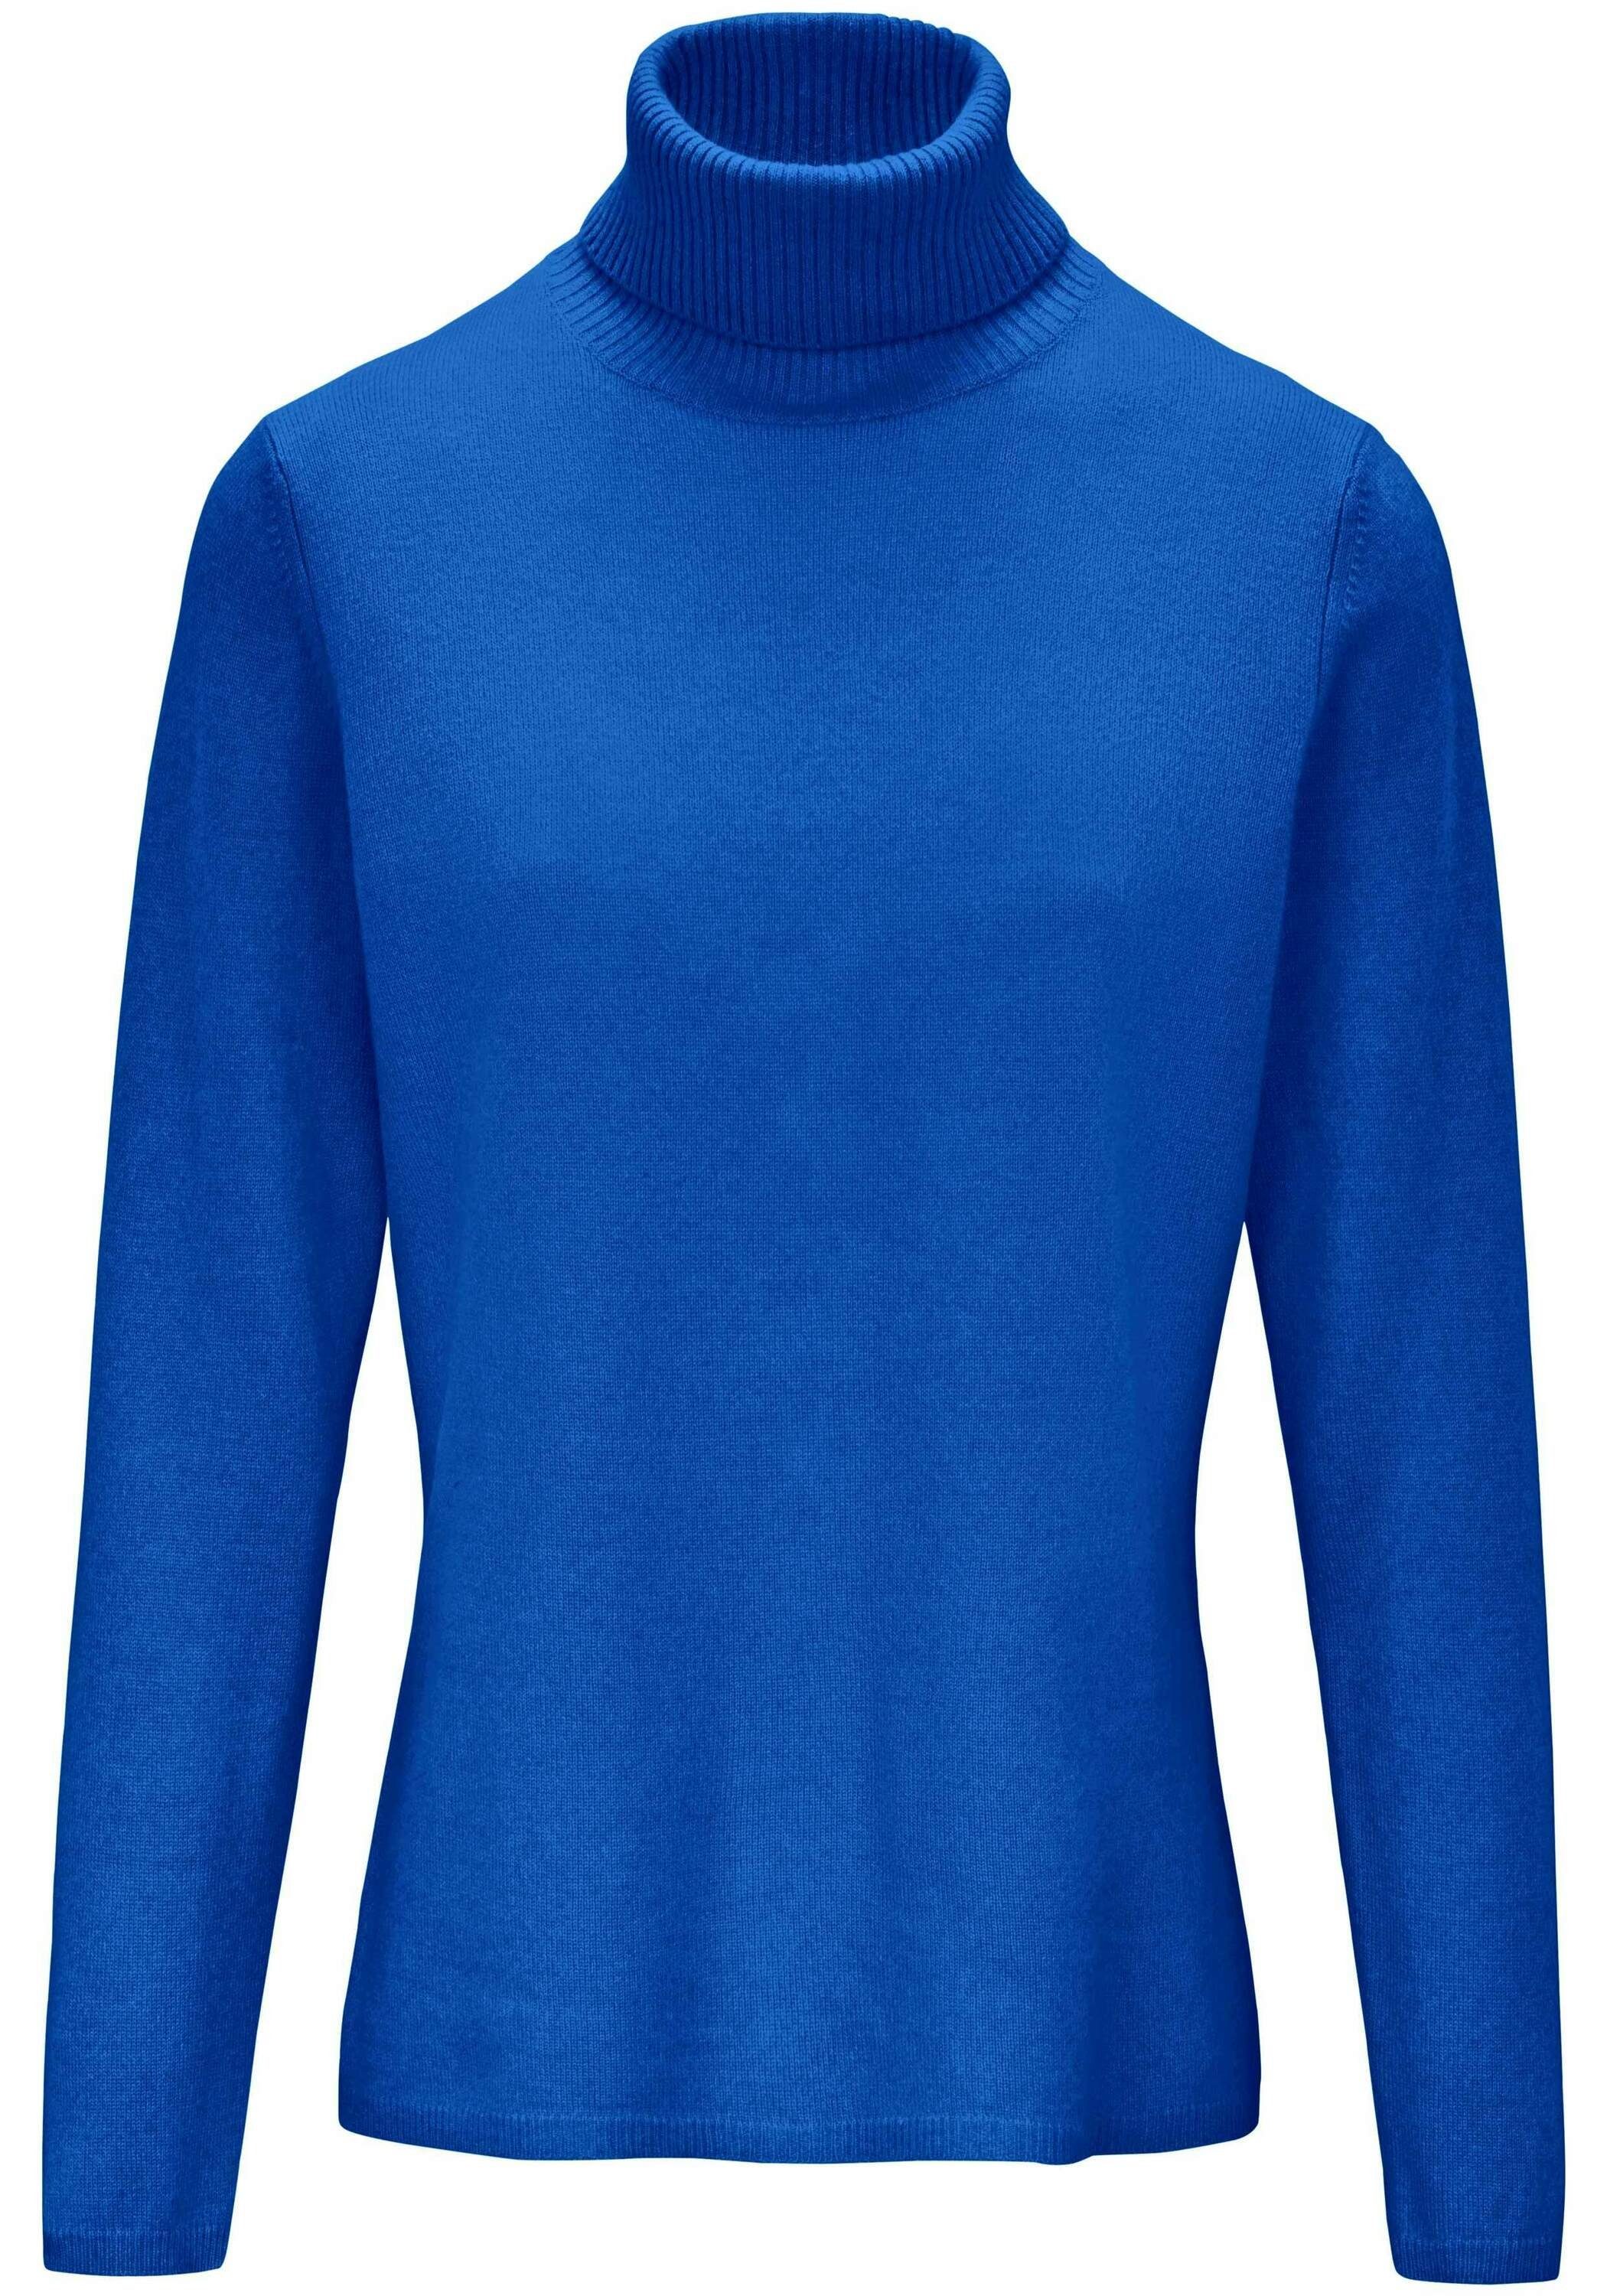 royalblau include wool new Sweatshirt .